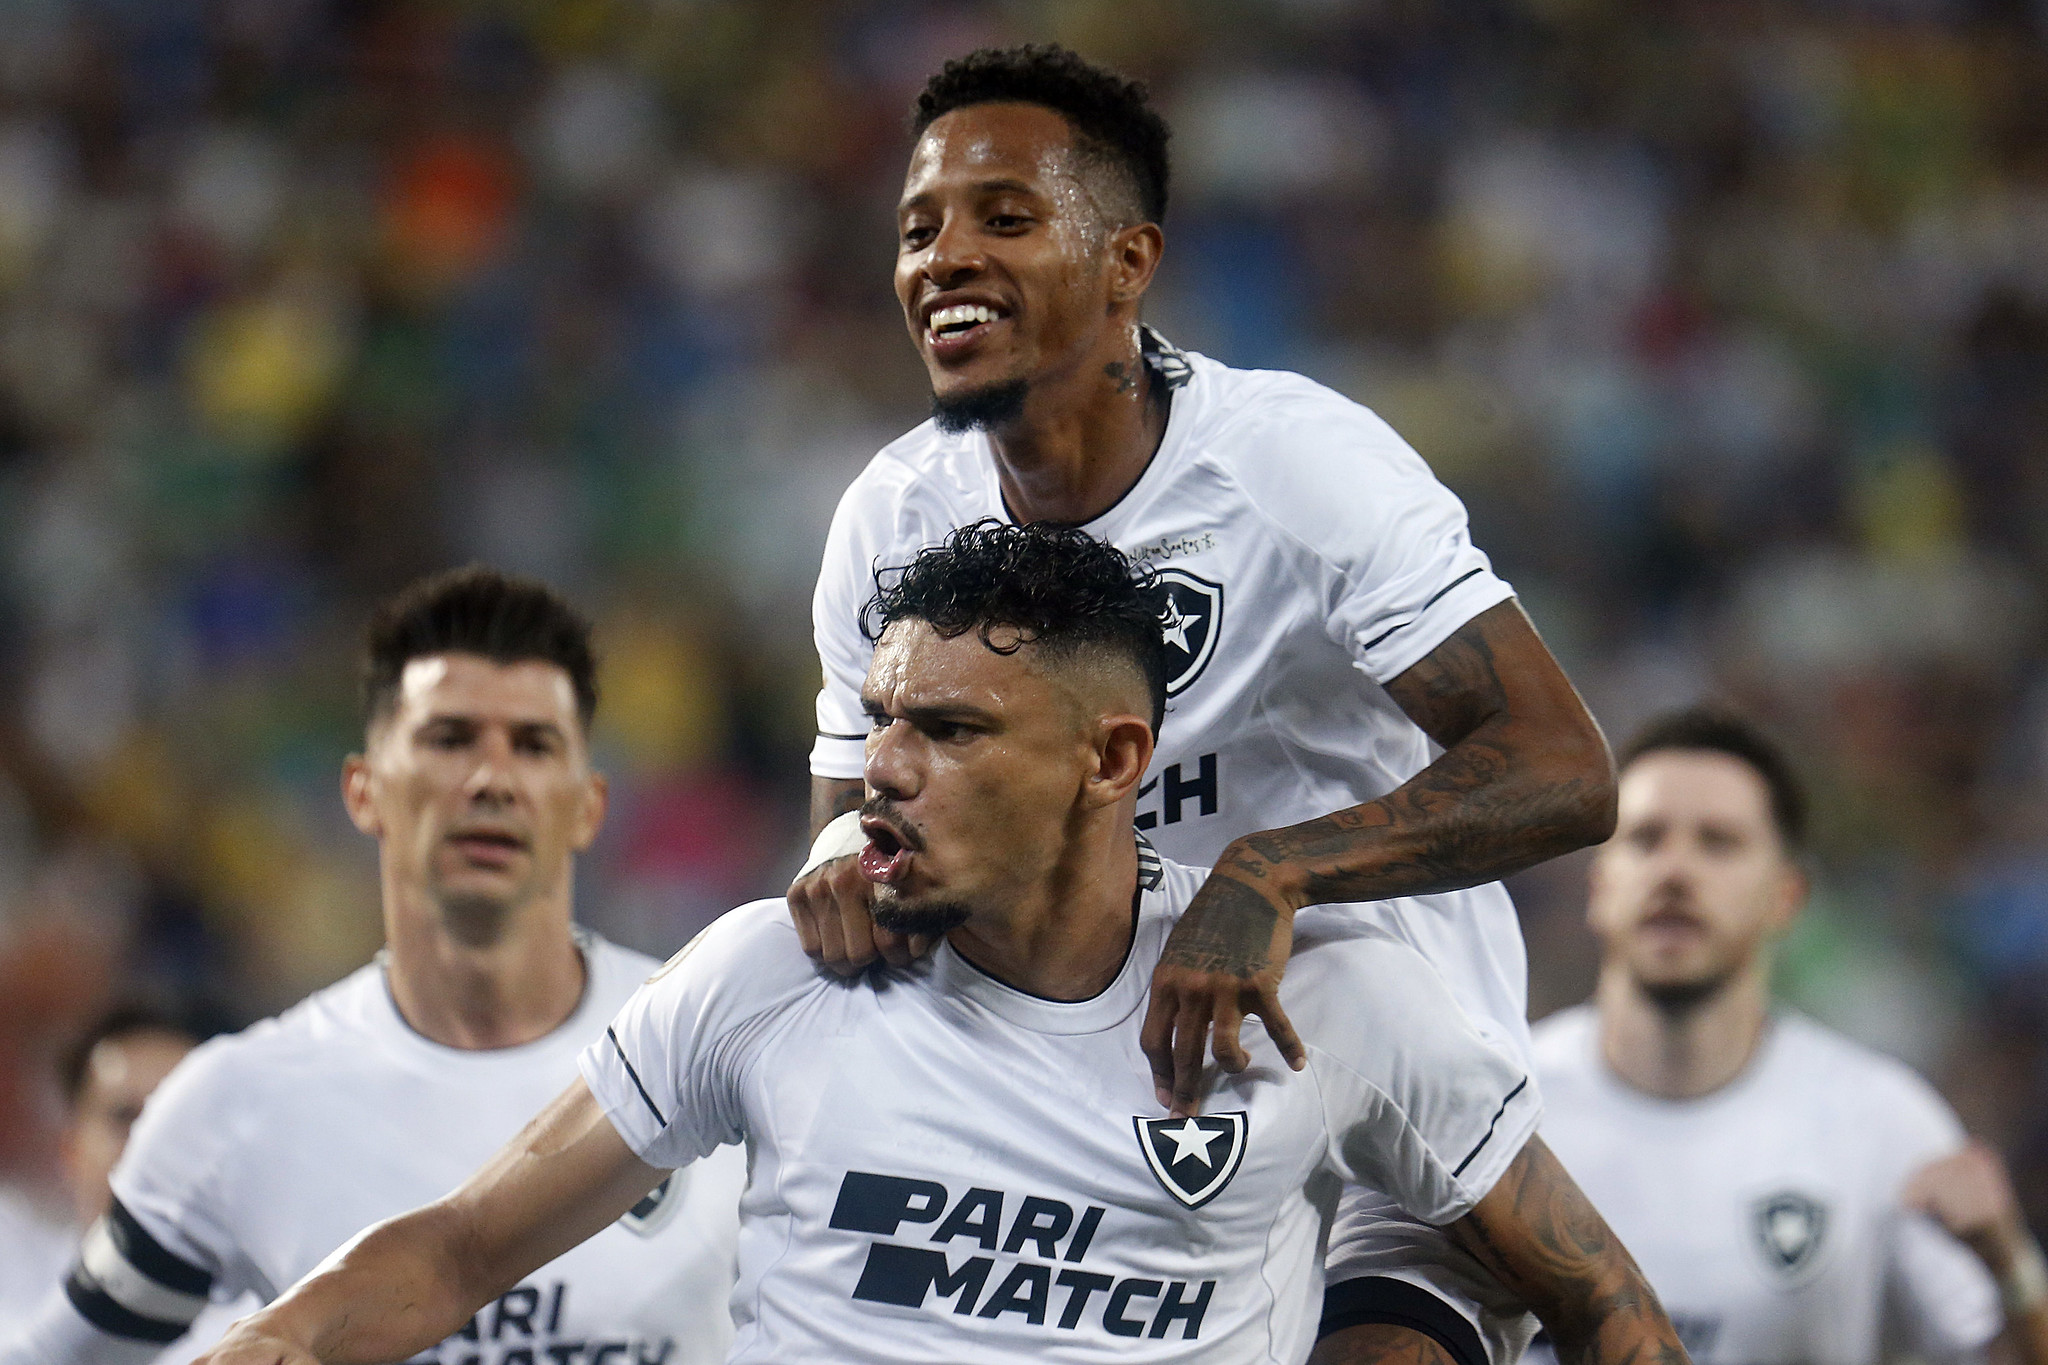 Tiquinho Soares e Tchê Tchê comemoram gol contra o Cuiabá. (Foto: Vítor Silva/Botafogo)